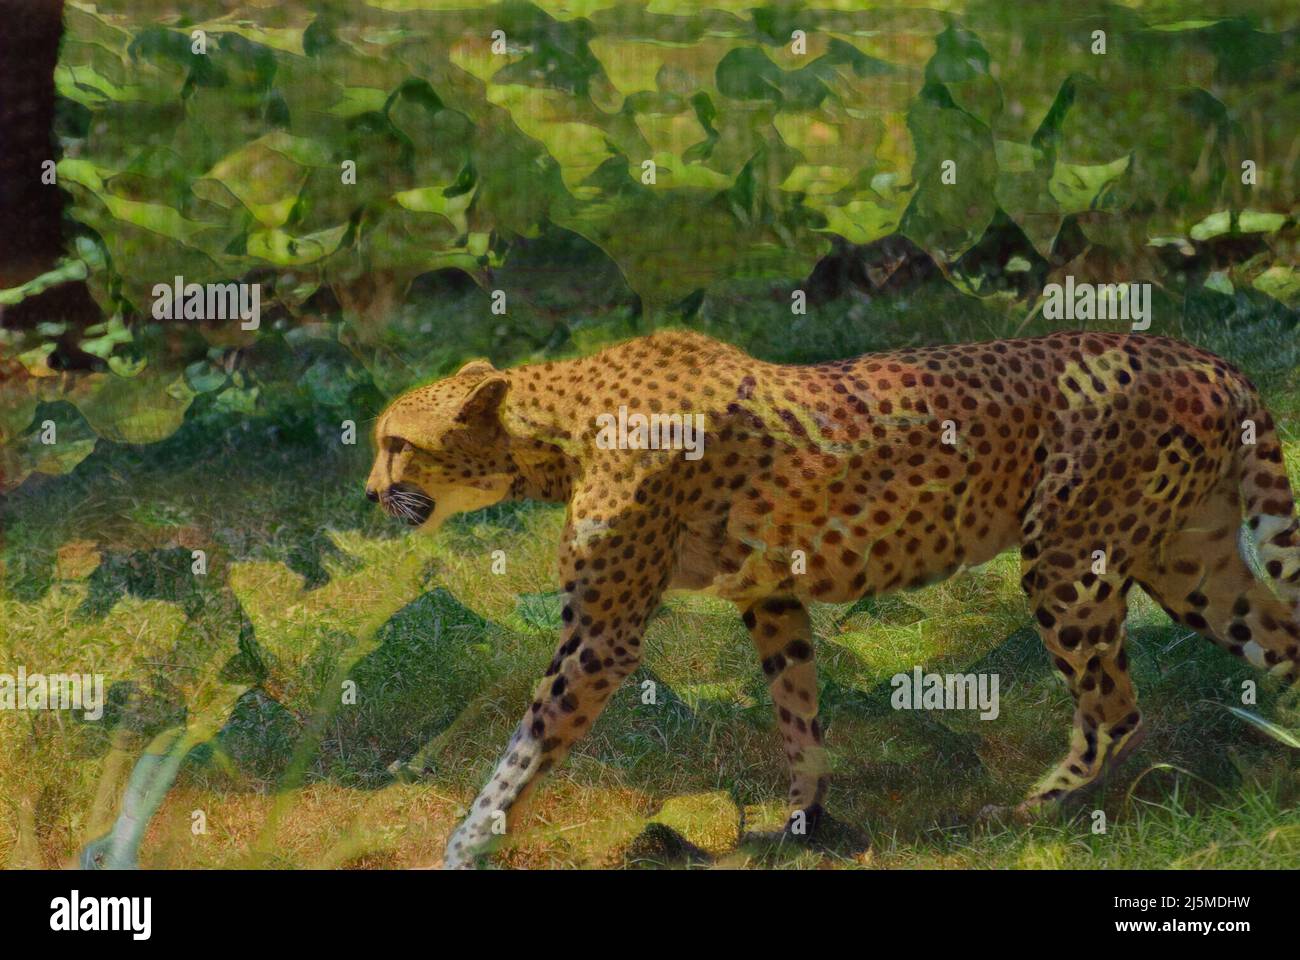 Photo éditée pour ressembler à un tableau abstrait d'un Cheetah. Banque D'Images